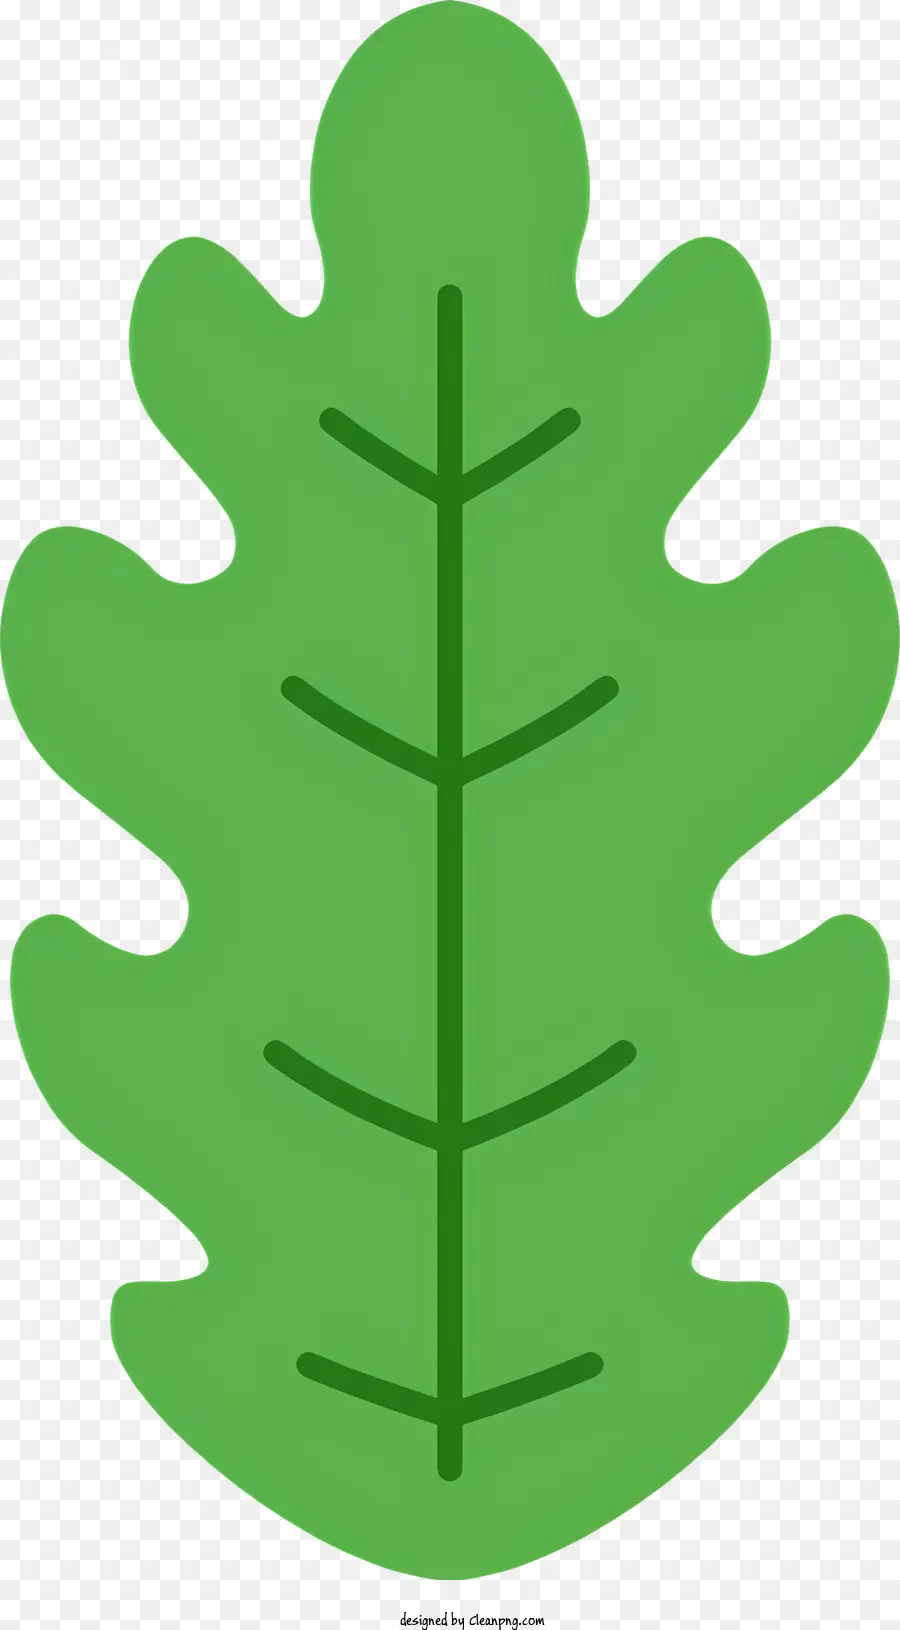 grünes Blatt - Großes, runde Blatt mit spitzen Ende, glatte Oberfläche